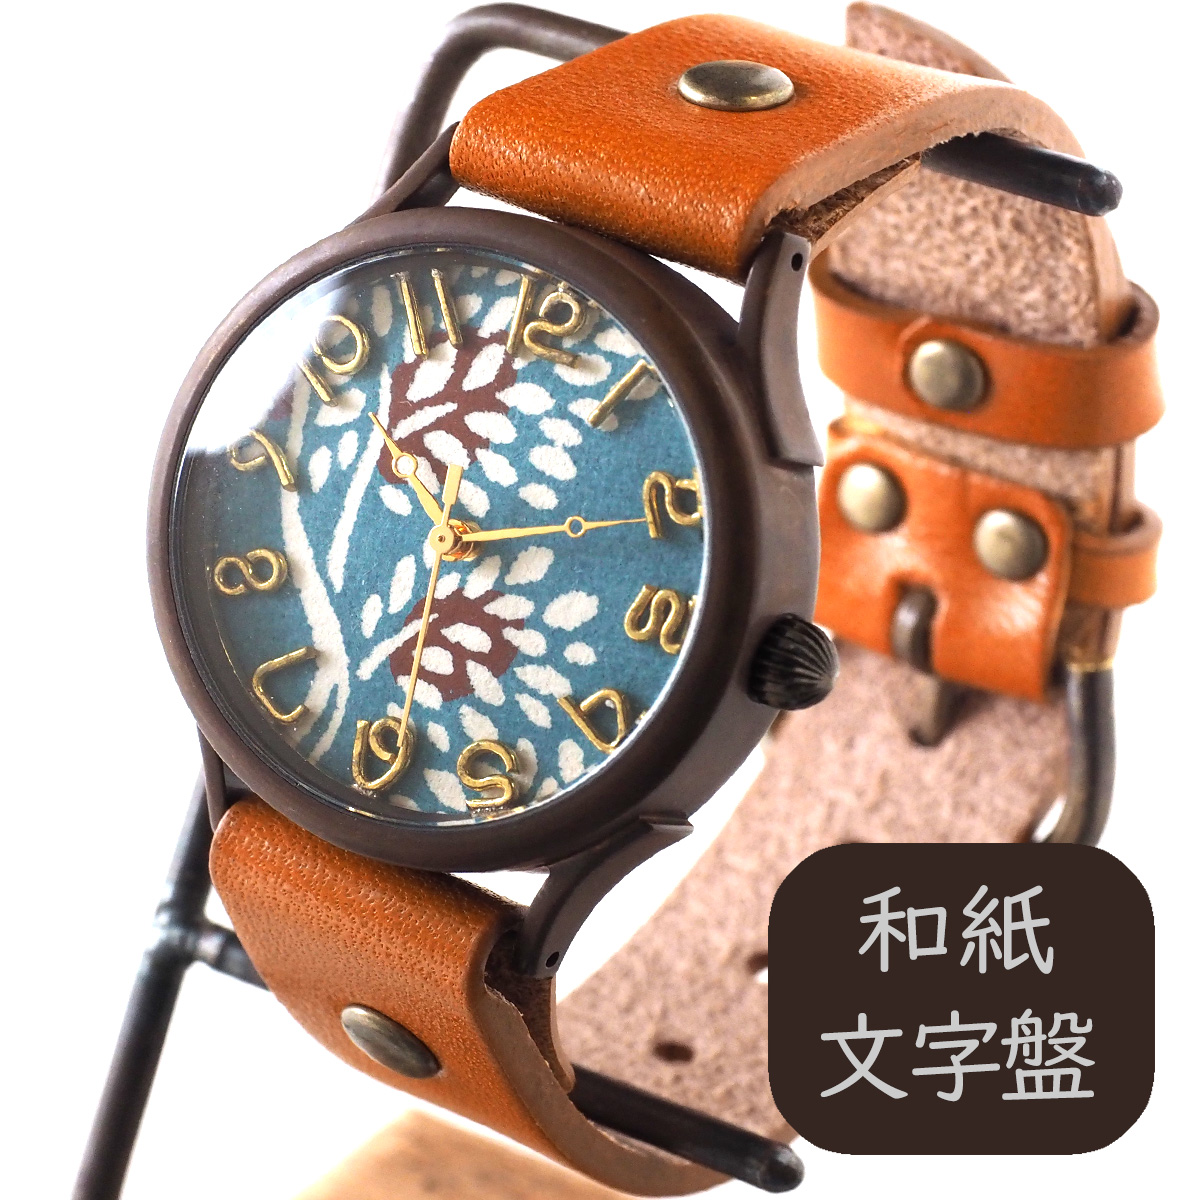 vie（ヴィー） 手作り腕時計 “和tch” 和紙文字盤 和時計 南天 ブルー Lサイズ [WJ-004L-BL] ハンドメイド ウォッチ  ハンドメイド腕時計 和時計 和柄 和風 メンズ レディース アンティーク調 栃木レザー 本革ベルト 日本製 | クラフトカフェ